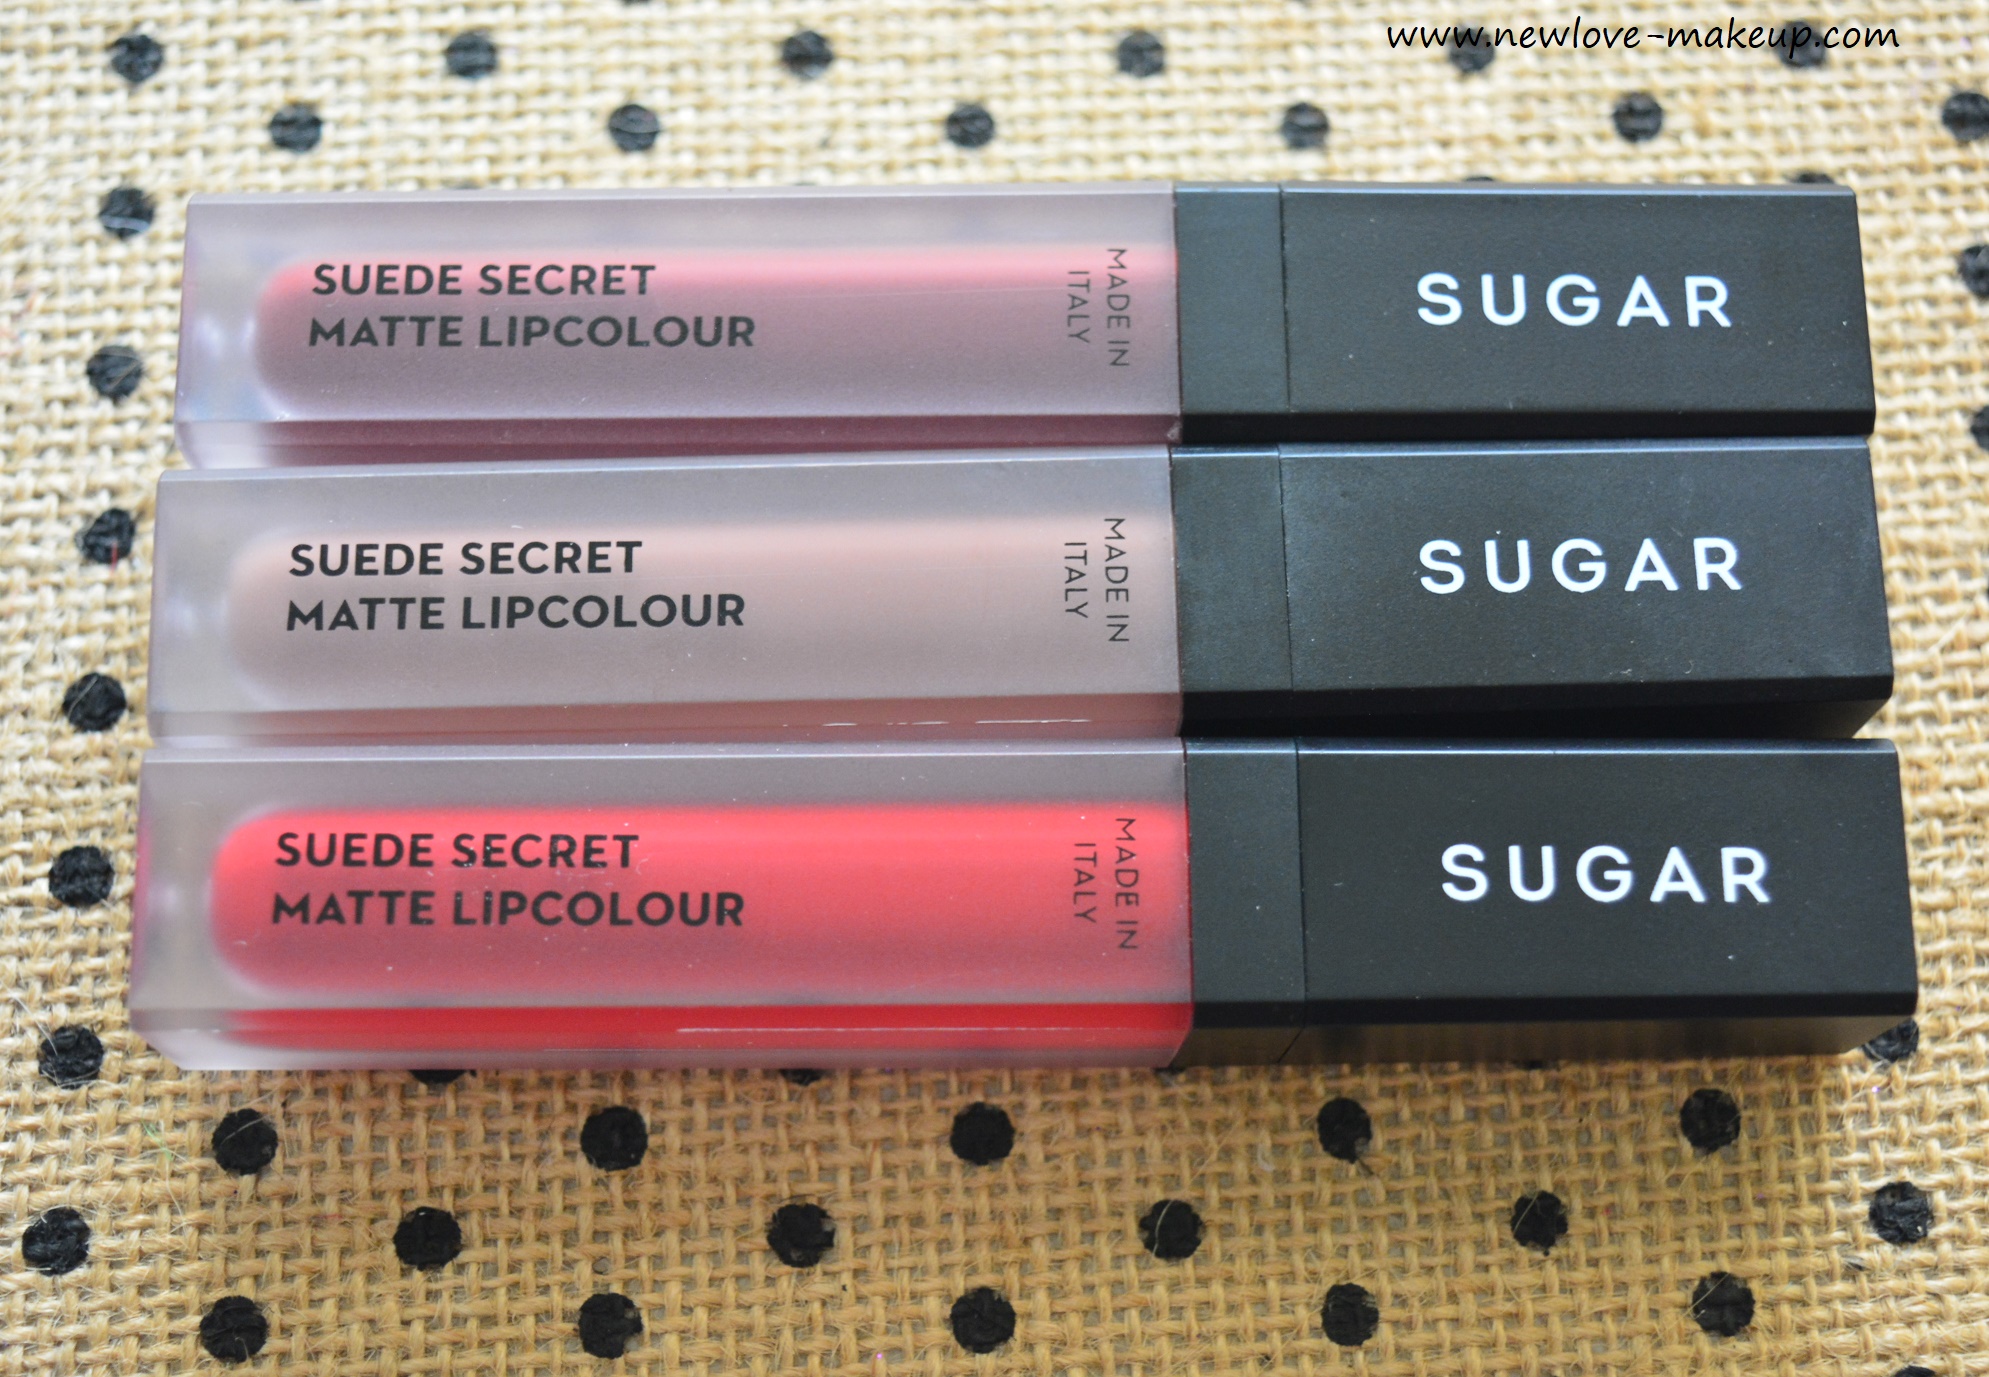 Sugar Cosmetics Suede Secret Matte Lipcolours Review, Swatches